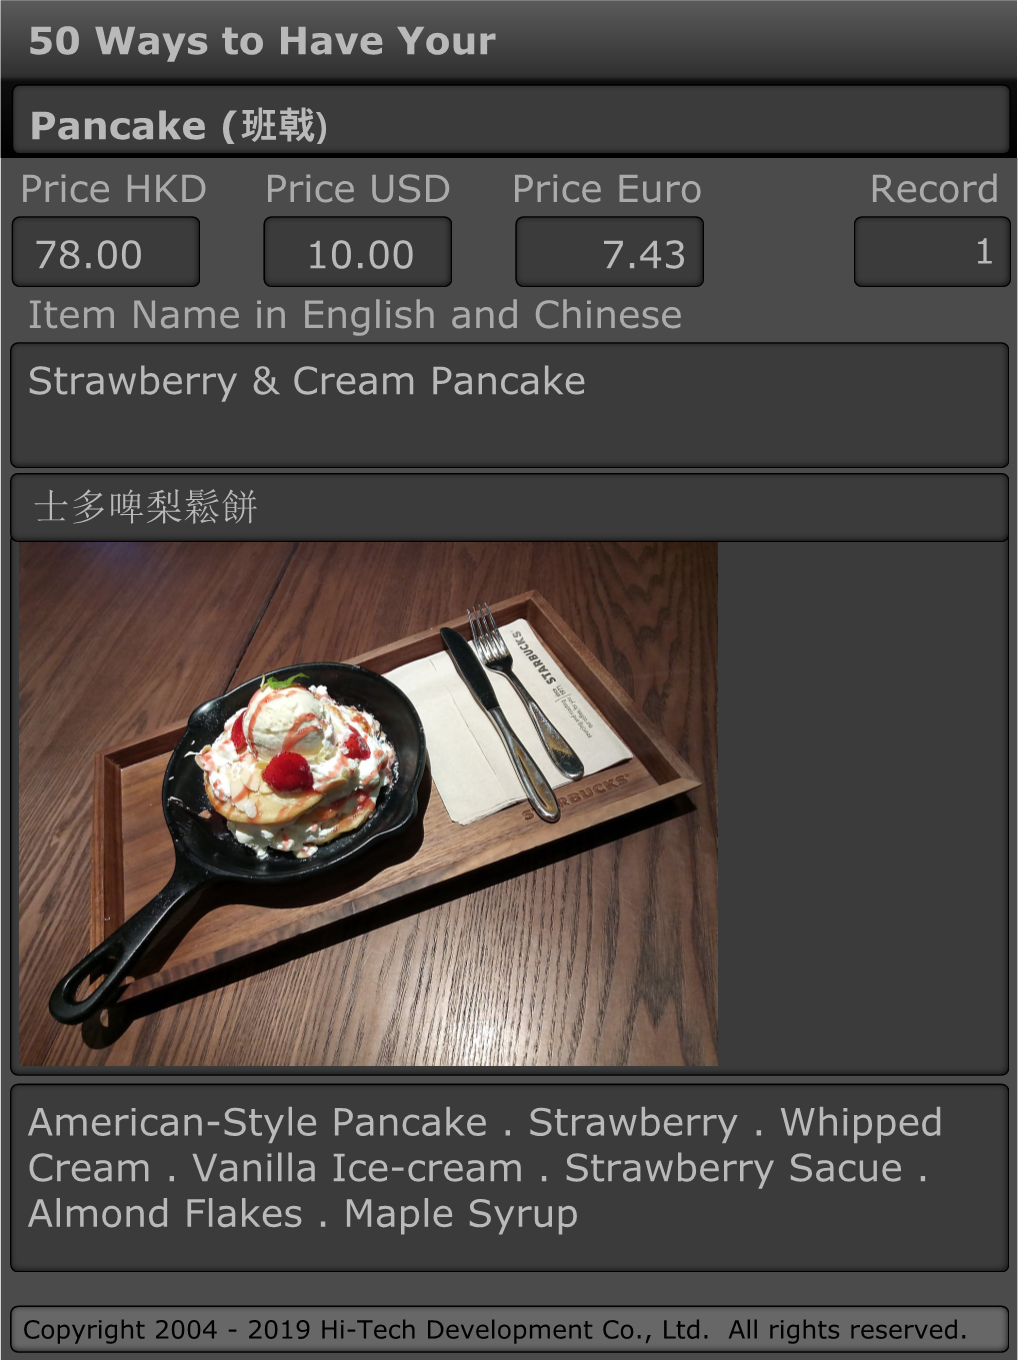 班戟) Price HKD Price USD Price Euro Record 78.00 10.00 7.43 1 Item Name in English and Chinese Strawberry & Cream Pancake